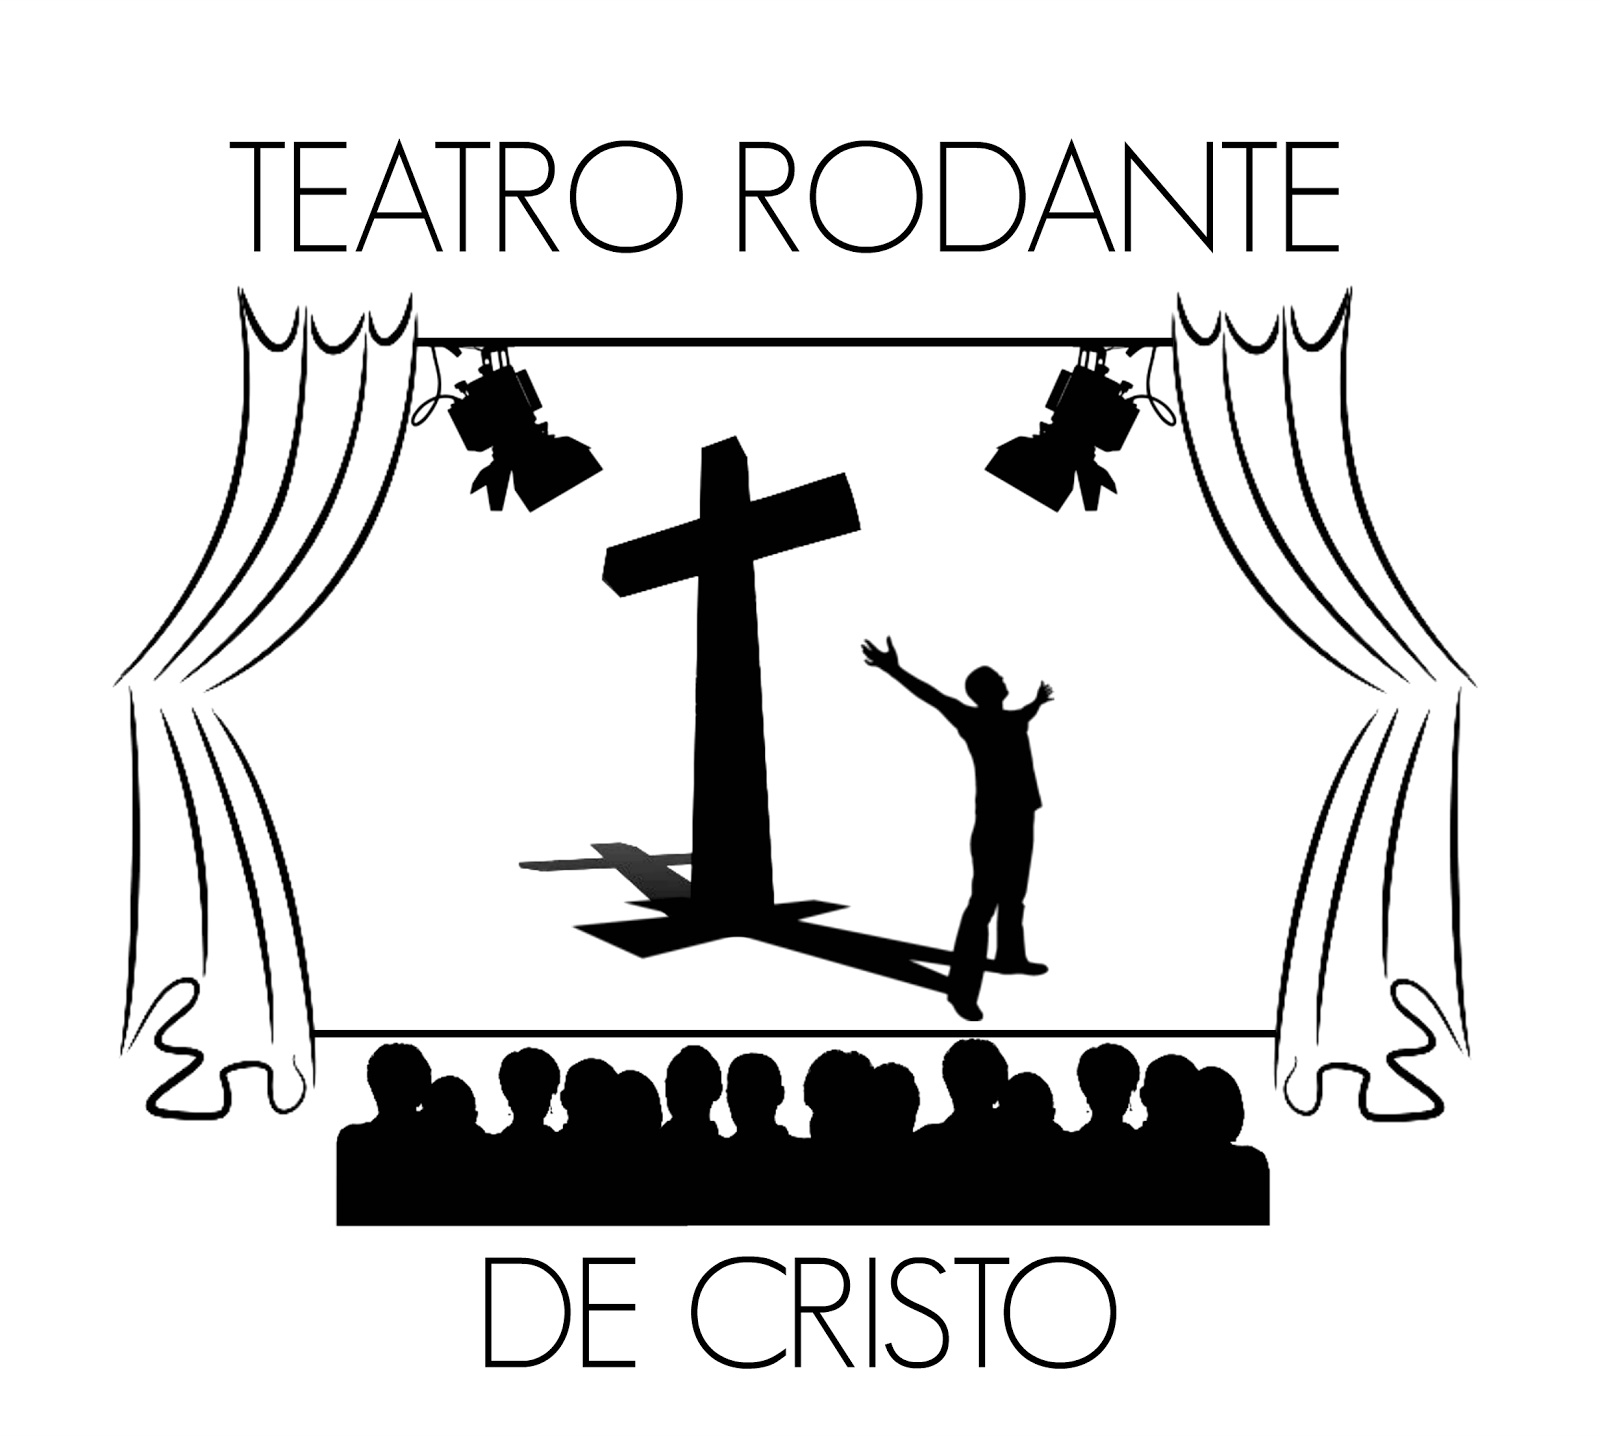 Teatro Rodante de Cristo